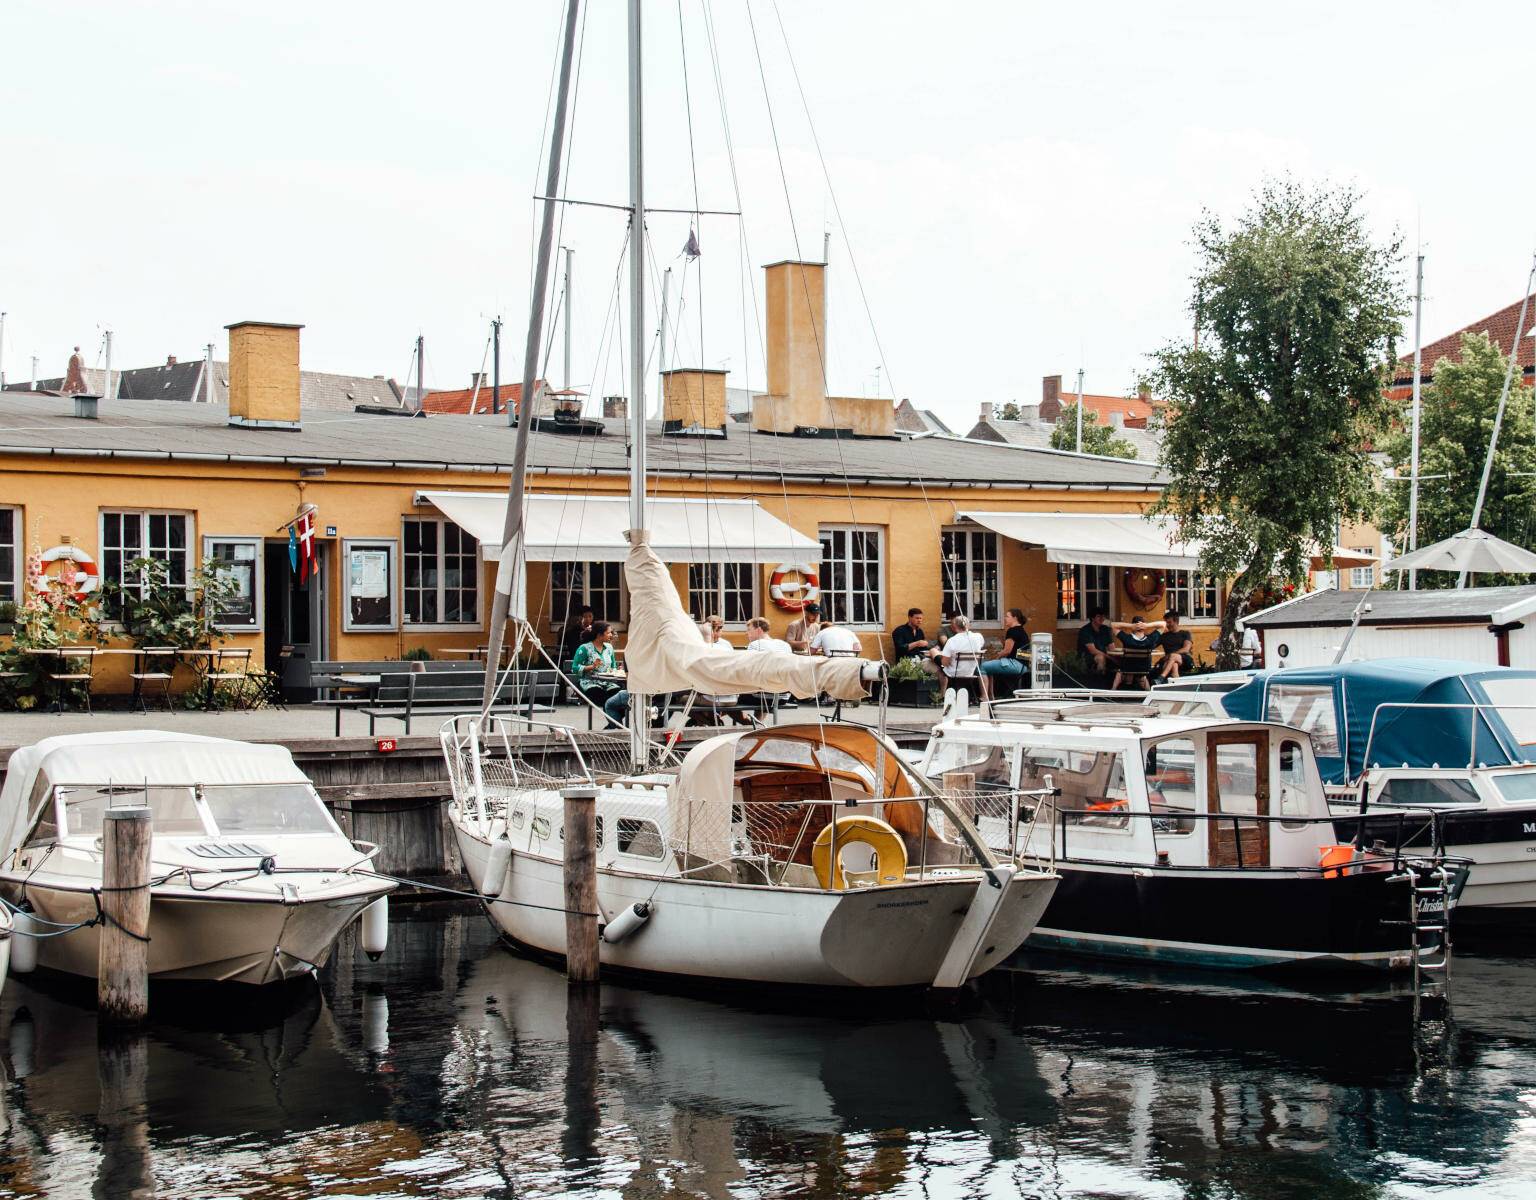 Im Wasser spiegeln sich die Boote, die in Kopenhagen angelegt haben.